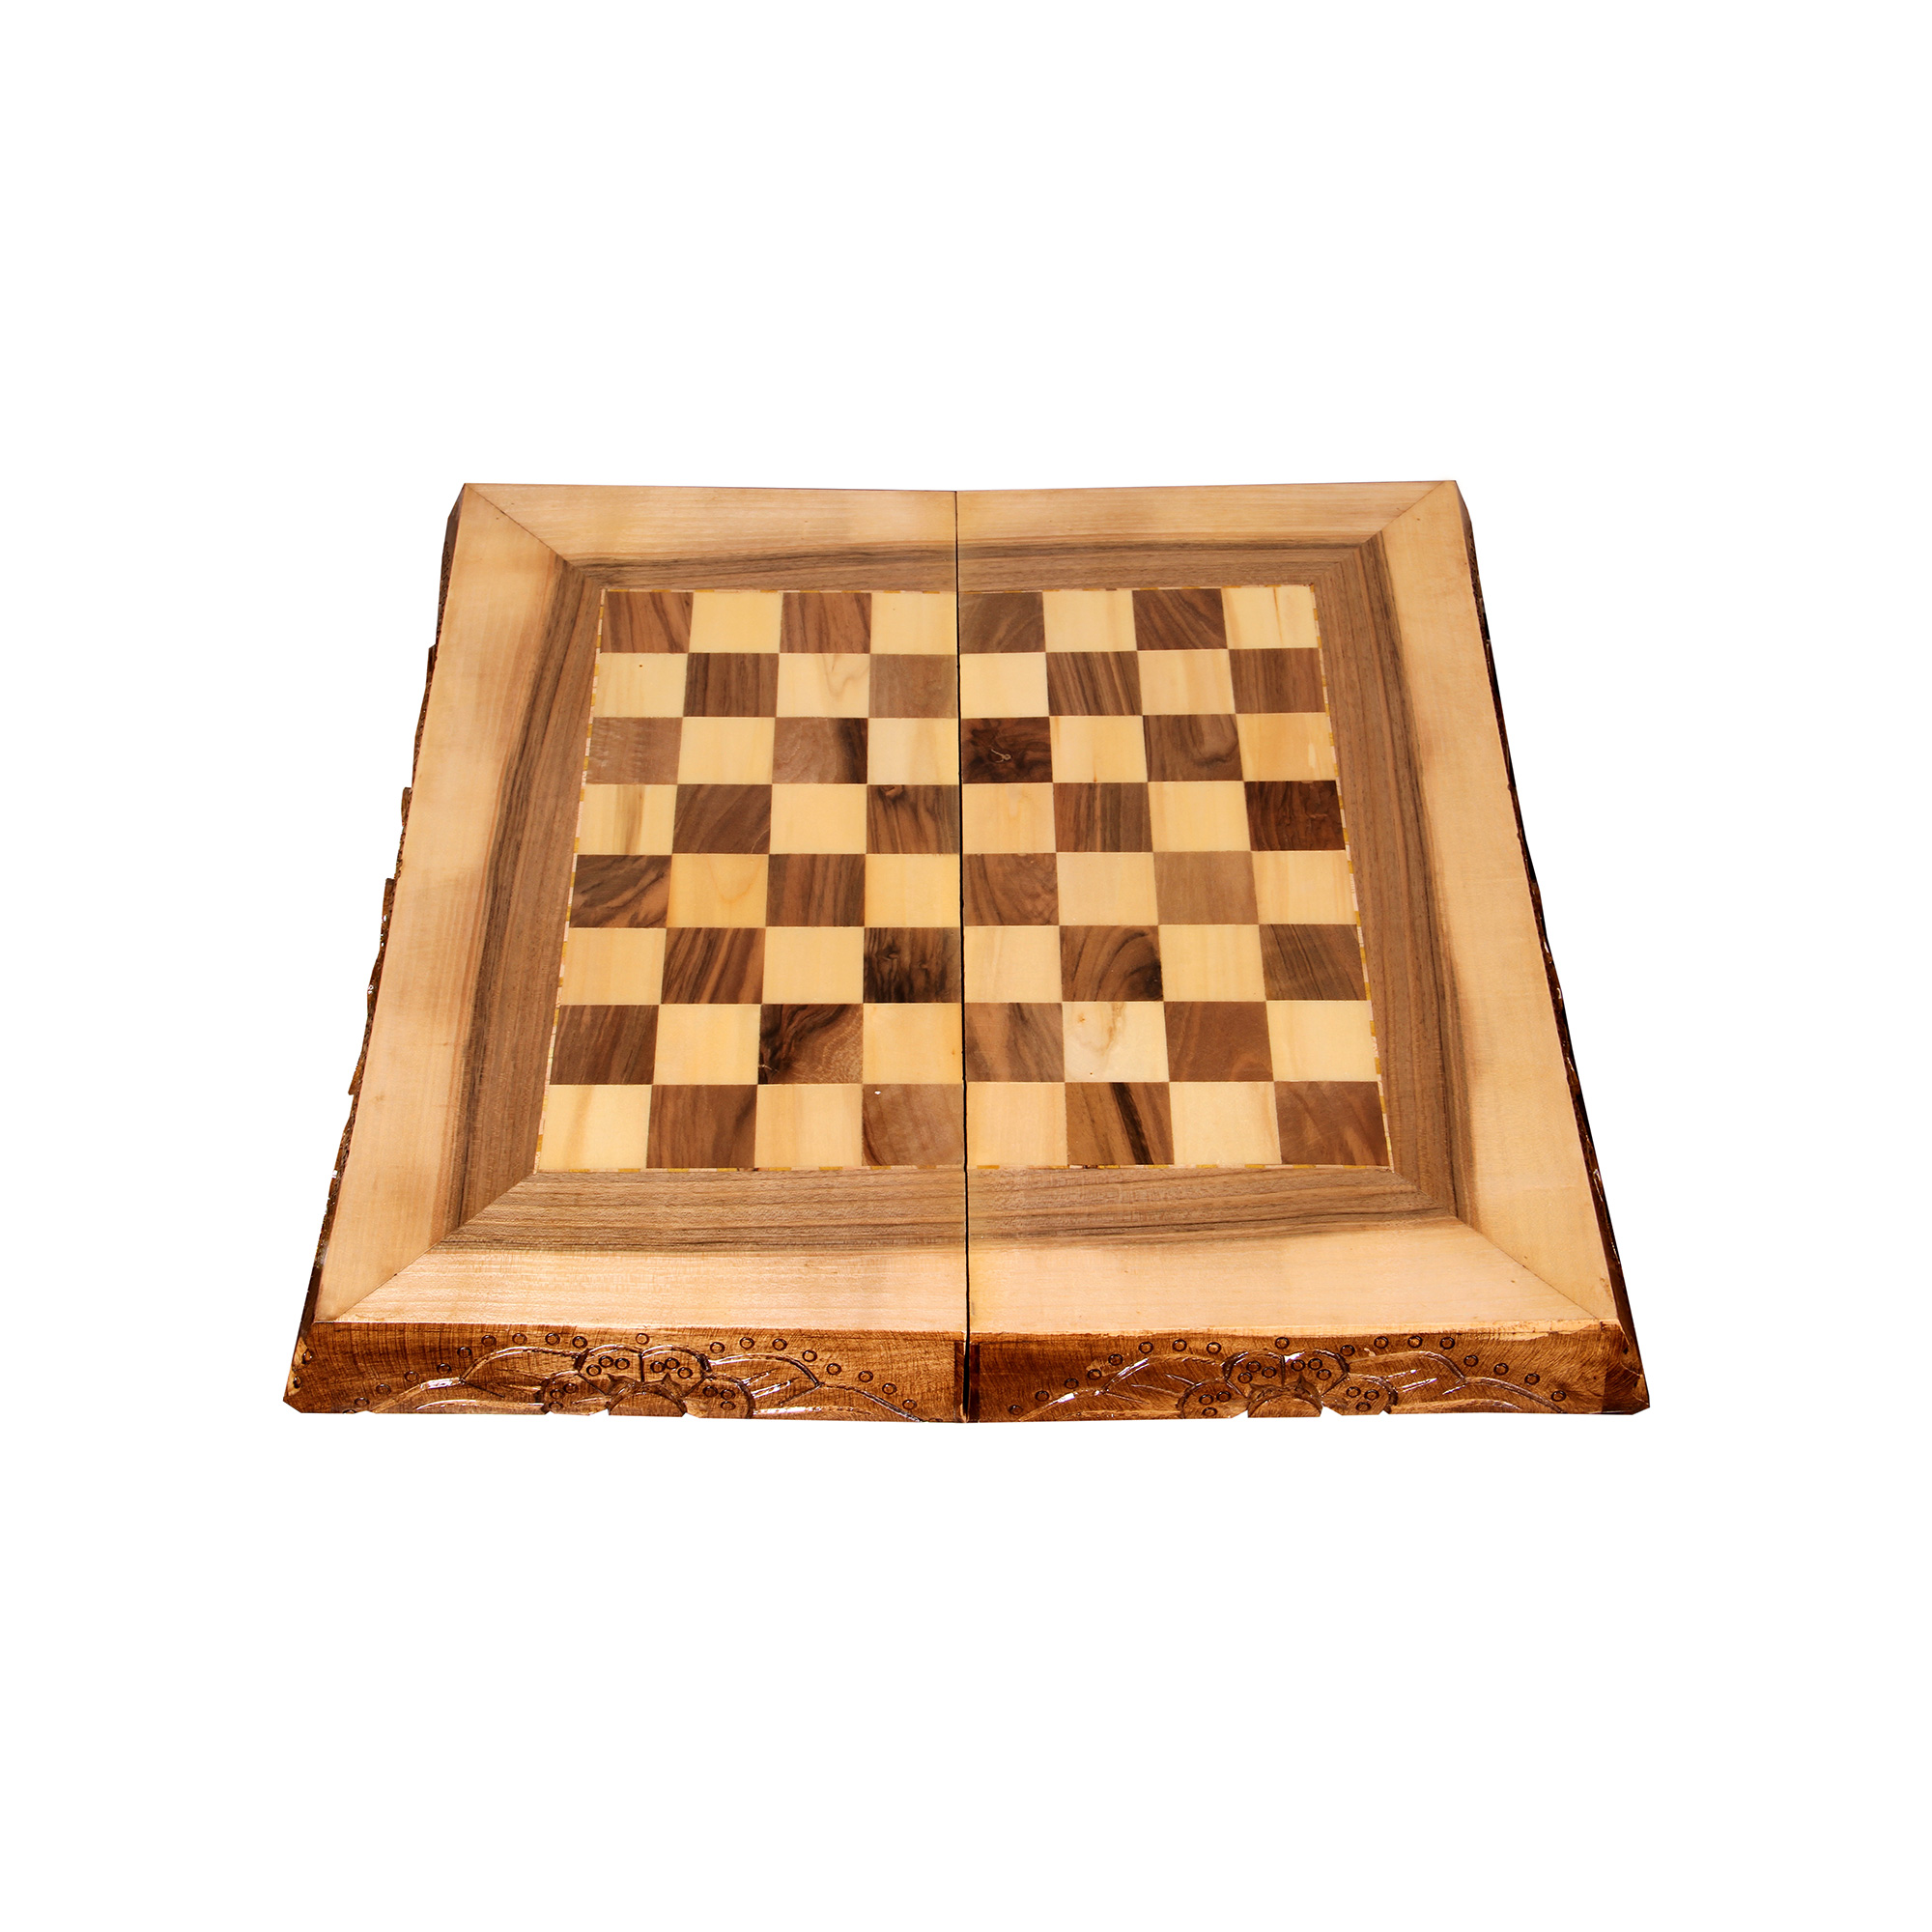 صفحه شطرنج مدل Diba_01